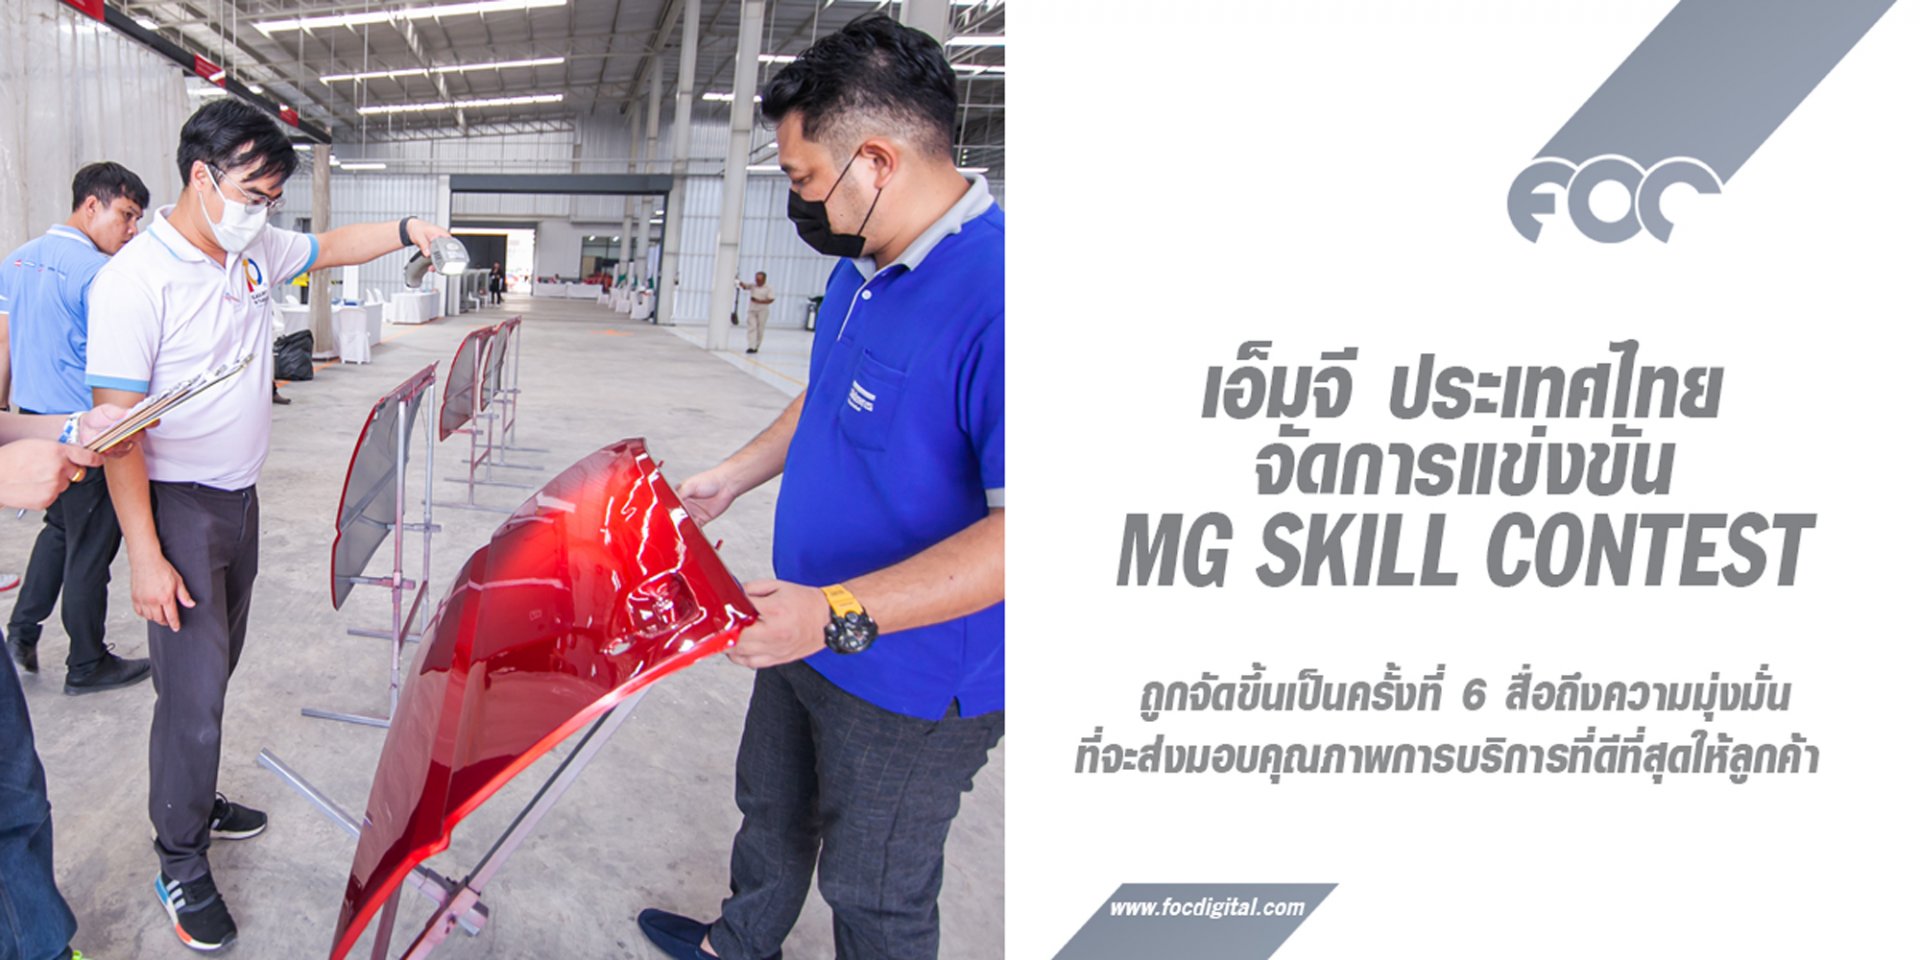 MG SKILL CONTEST บททดสอบทักษะการบริการ เพื่อเป้าหมายสร้างประสบการณ์ที่ดีให้ลูกค้าทั่วประเทศ